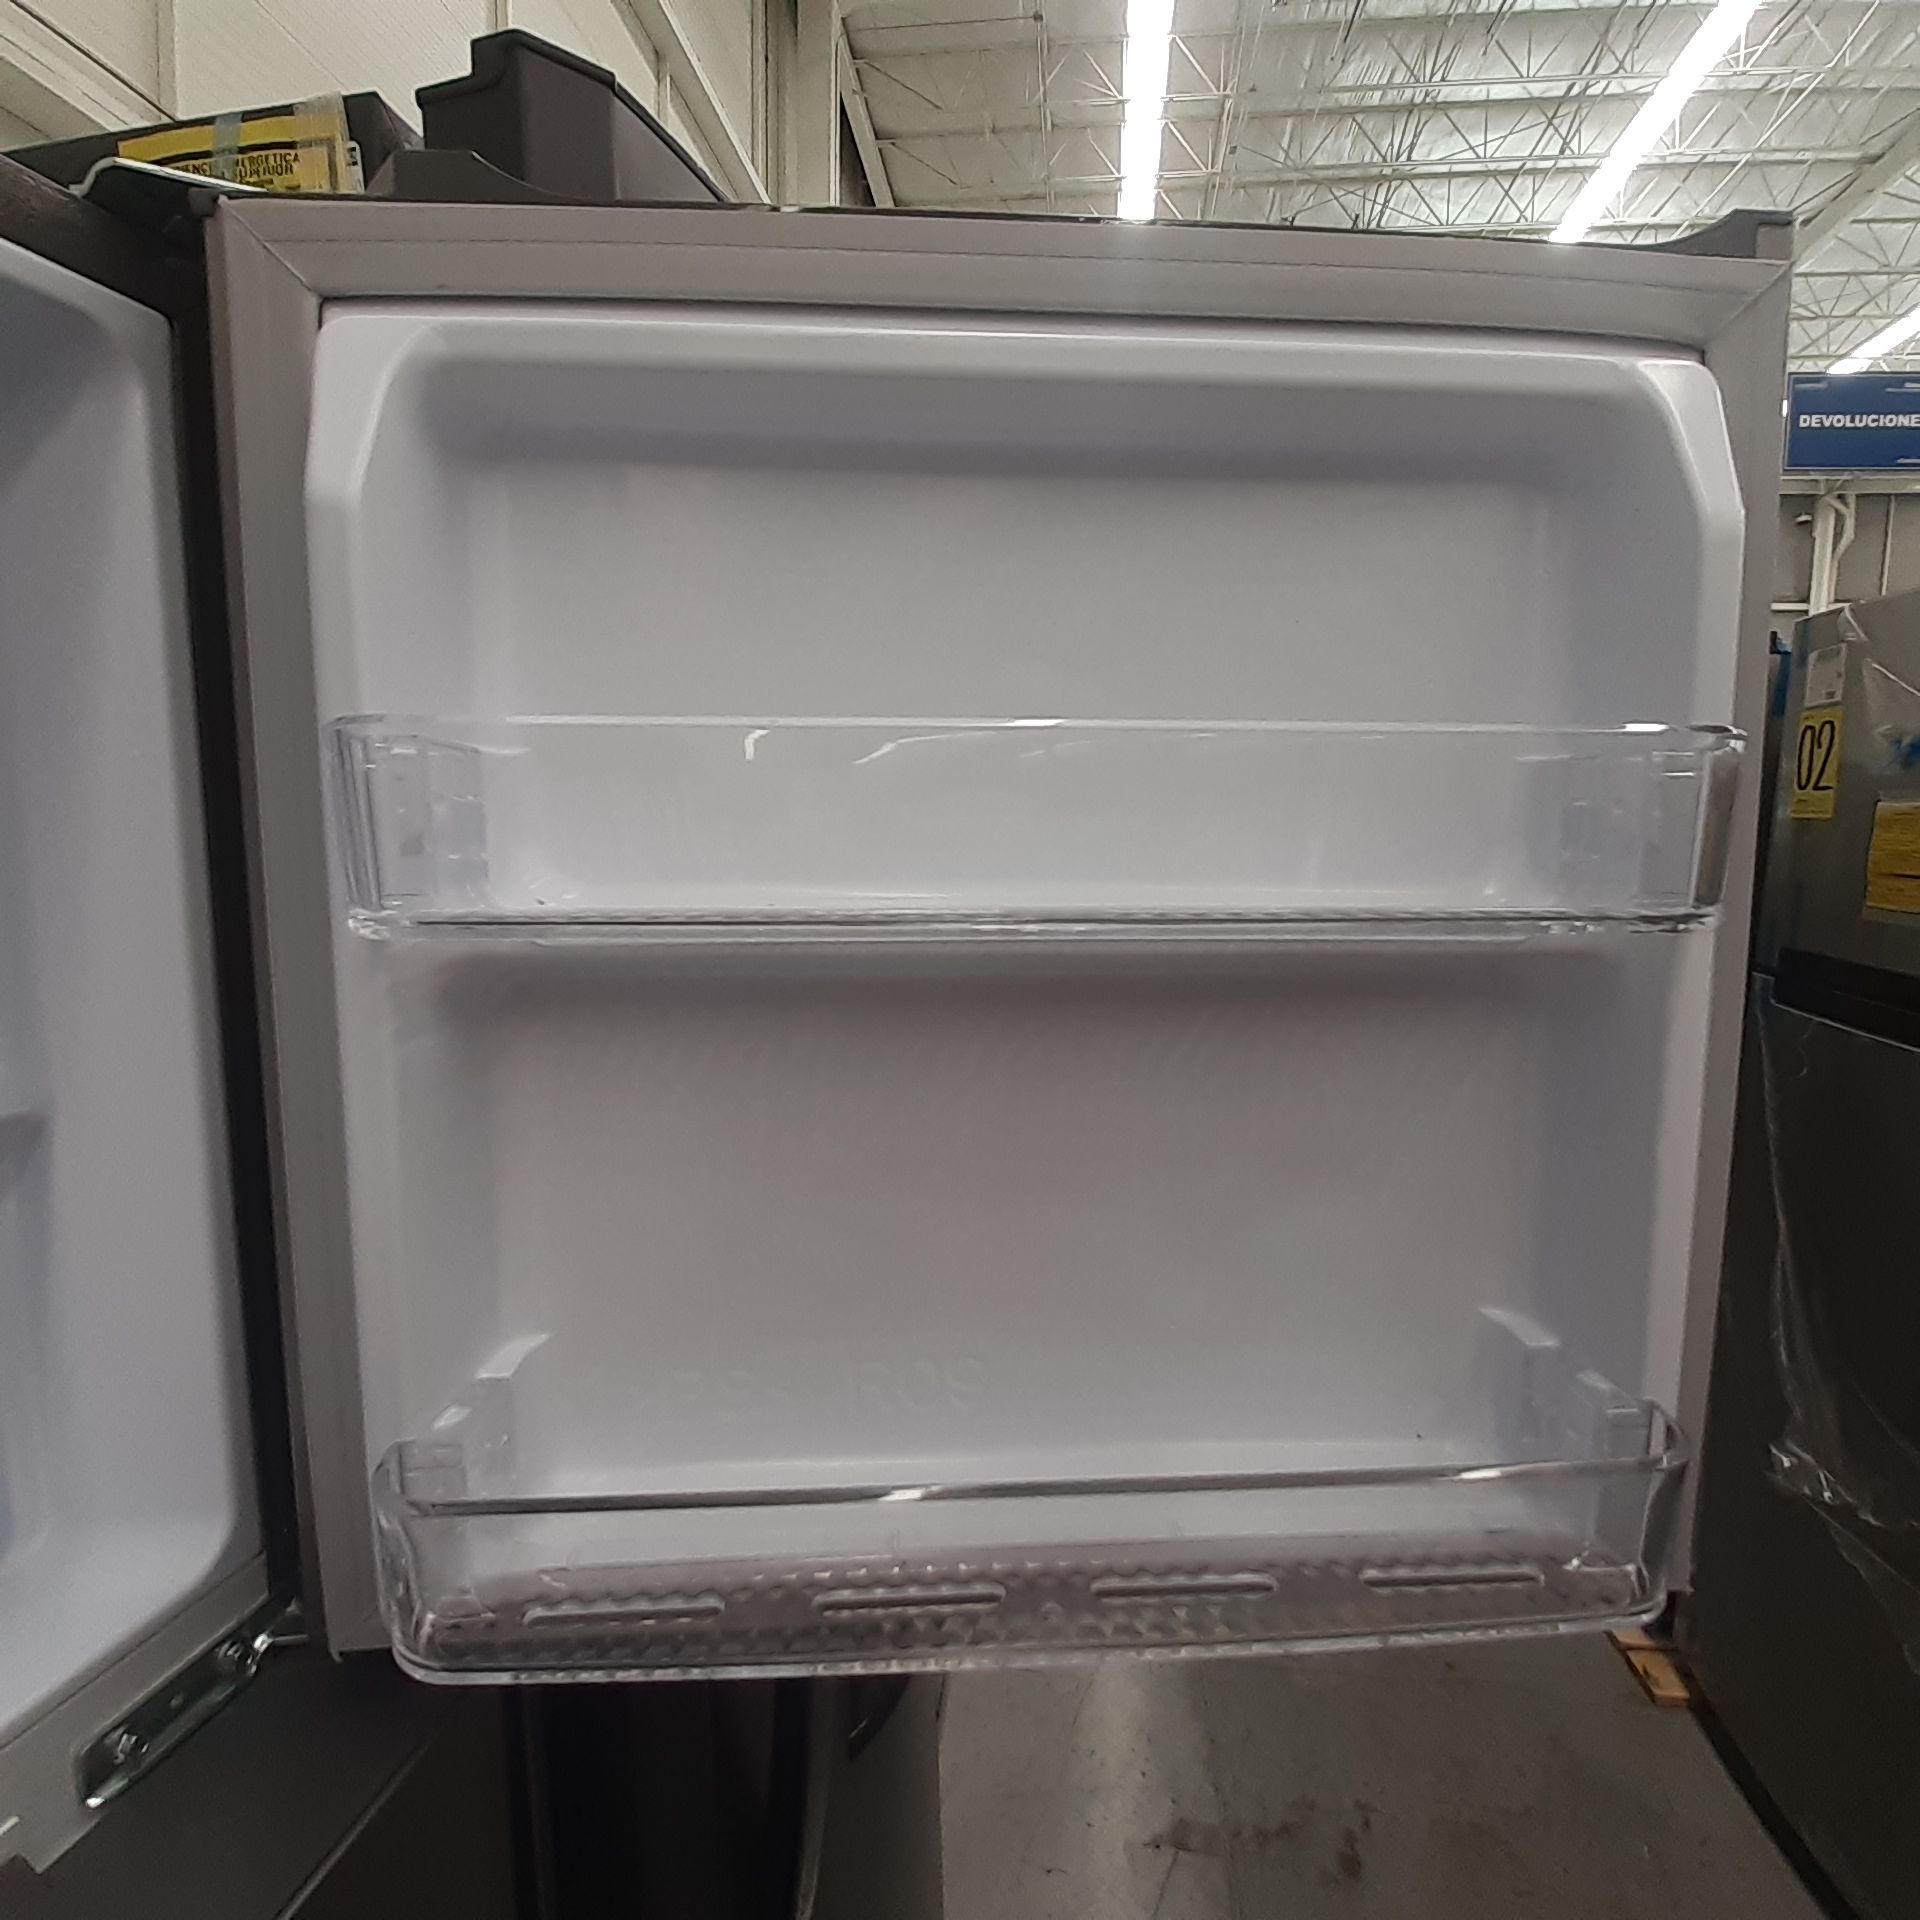 Lote De 2 Refrigeradores: 1 Refrigerador Marca Mabe, 1 Refrigerador Marca Winia, Distintos Modelos - Image 11 of 23